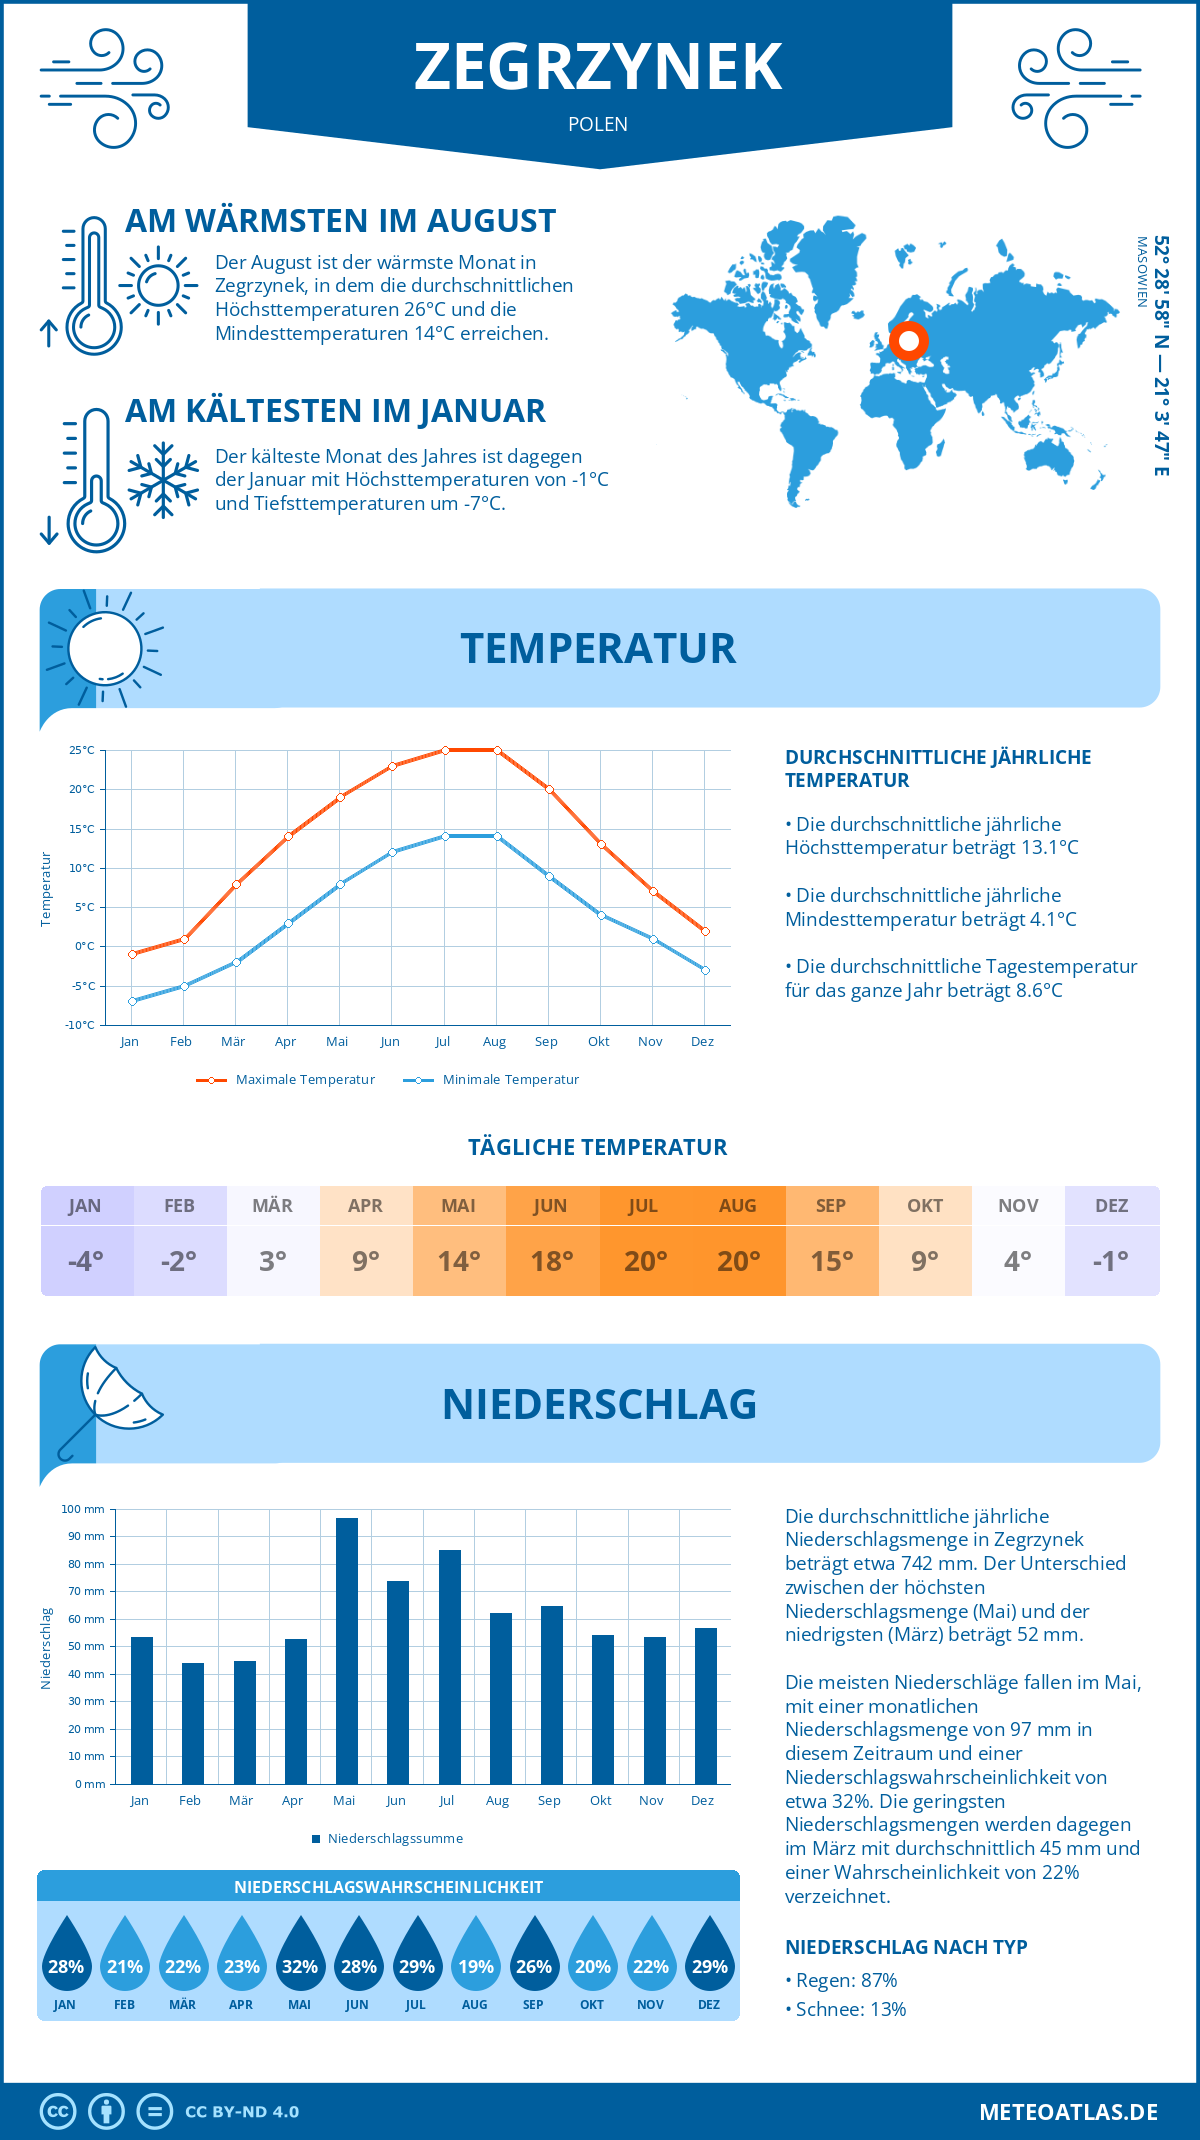 Wetter Zegrzynek (Polen) - Temperatur und Niederschlag